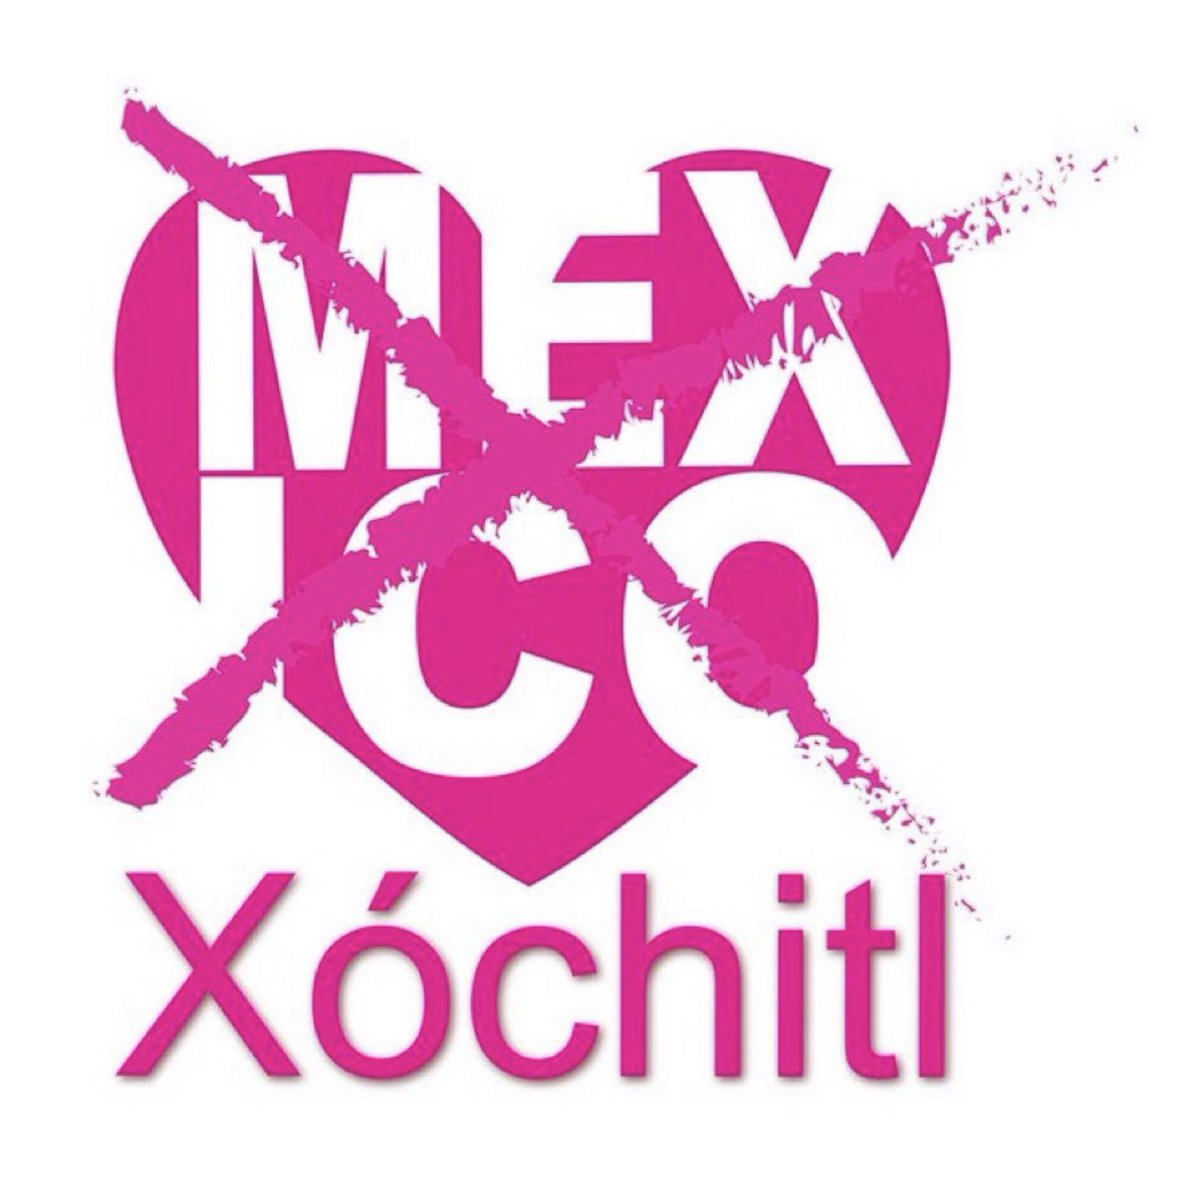 @XochitlGalvez Es la alternativa para Preservar y fortalecer la República. Tenemos que salir a defender a México 🇲🇽 con nuestro voto.
#Vota2Junio
#XóchitlGálvezPresidenta